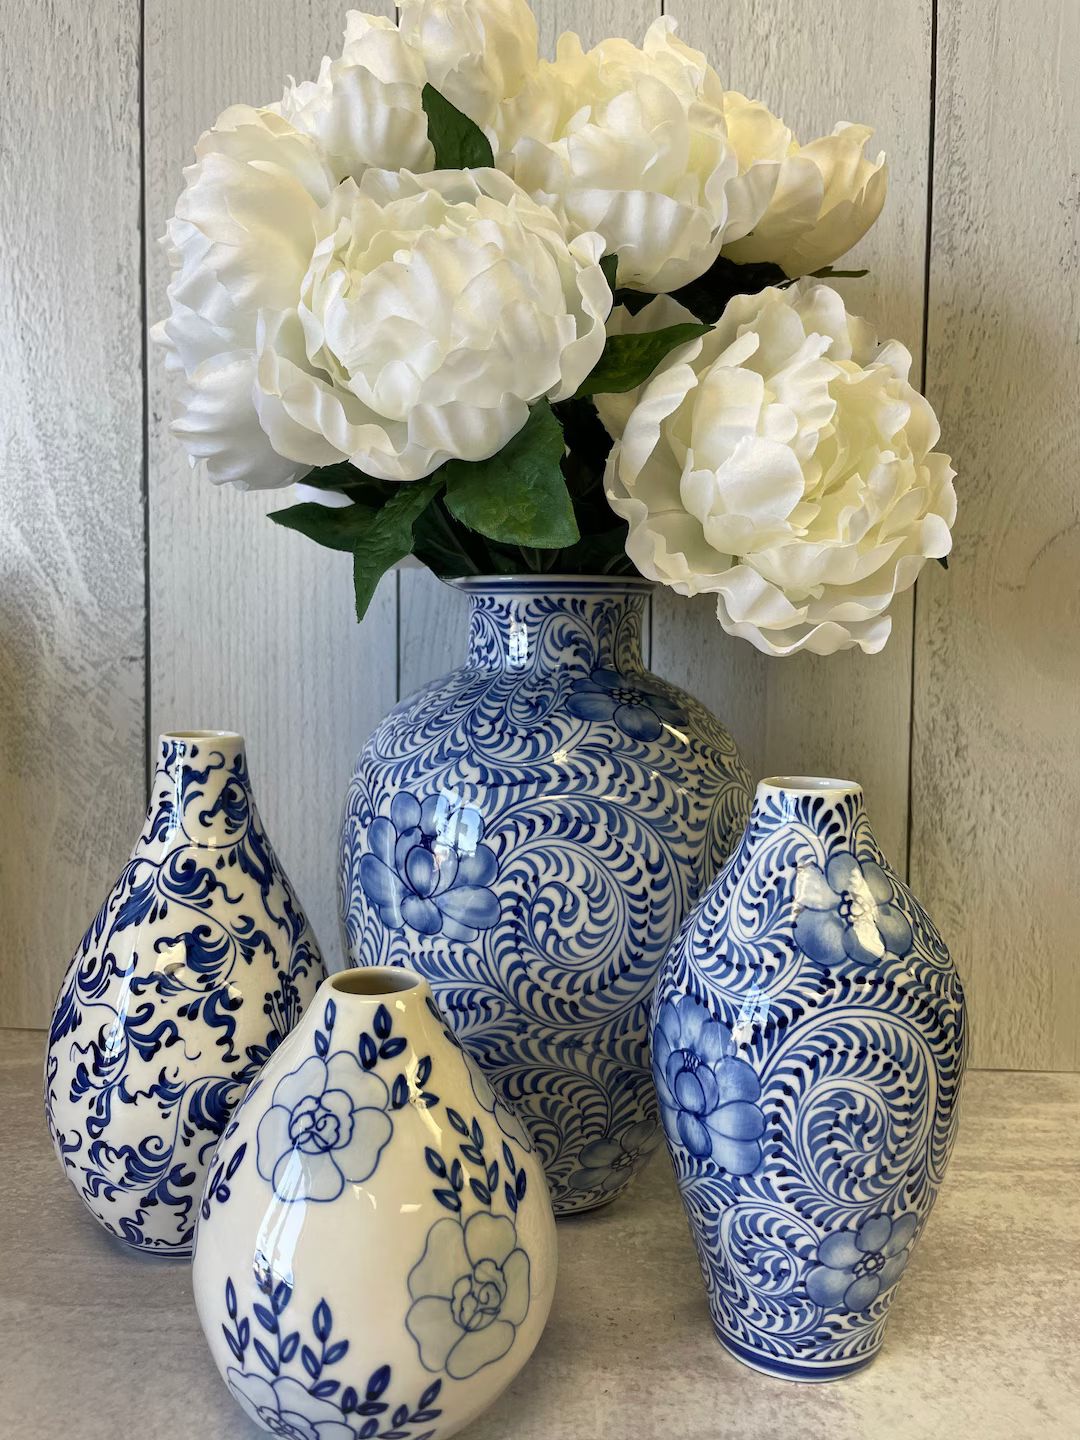 Blue and White  Bud Vases- 3 Sizes - Home Decor - Ceramic - Floral Vases | Etsy (US)